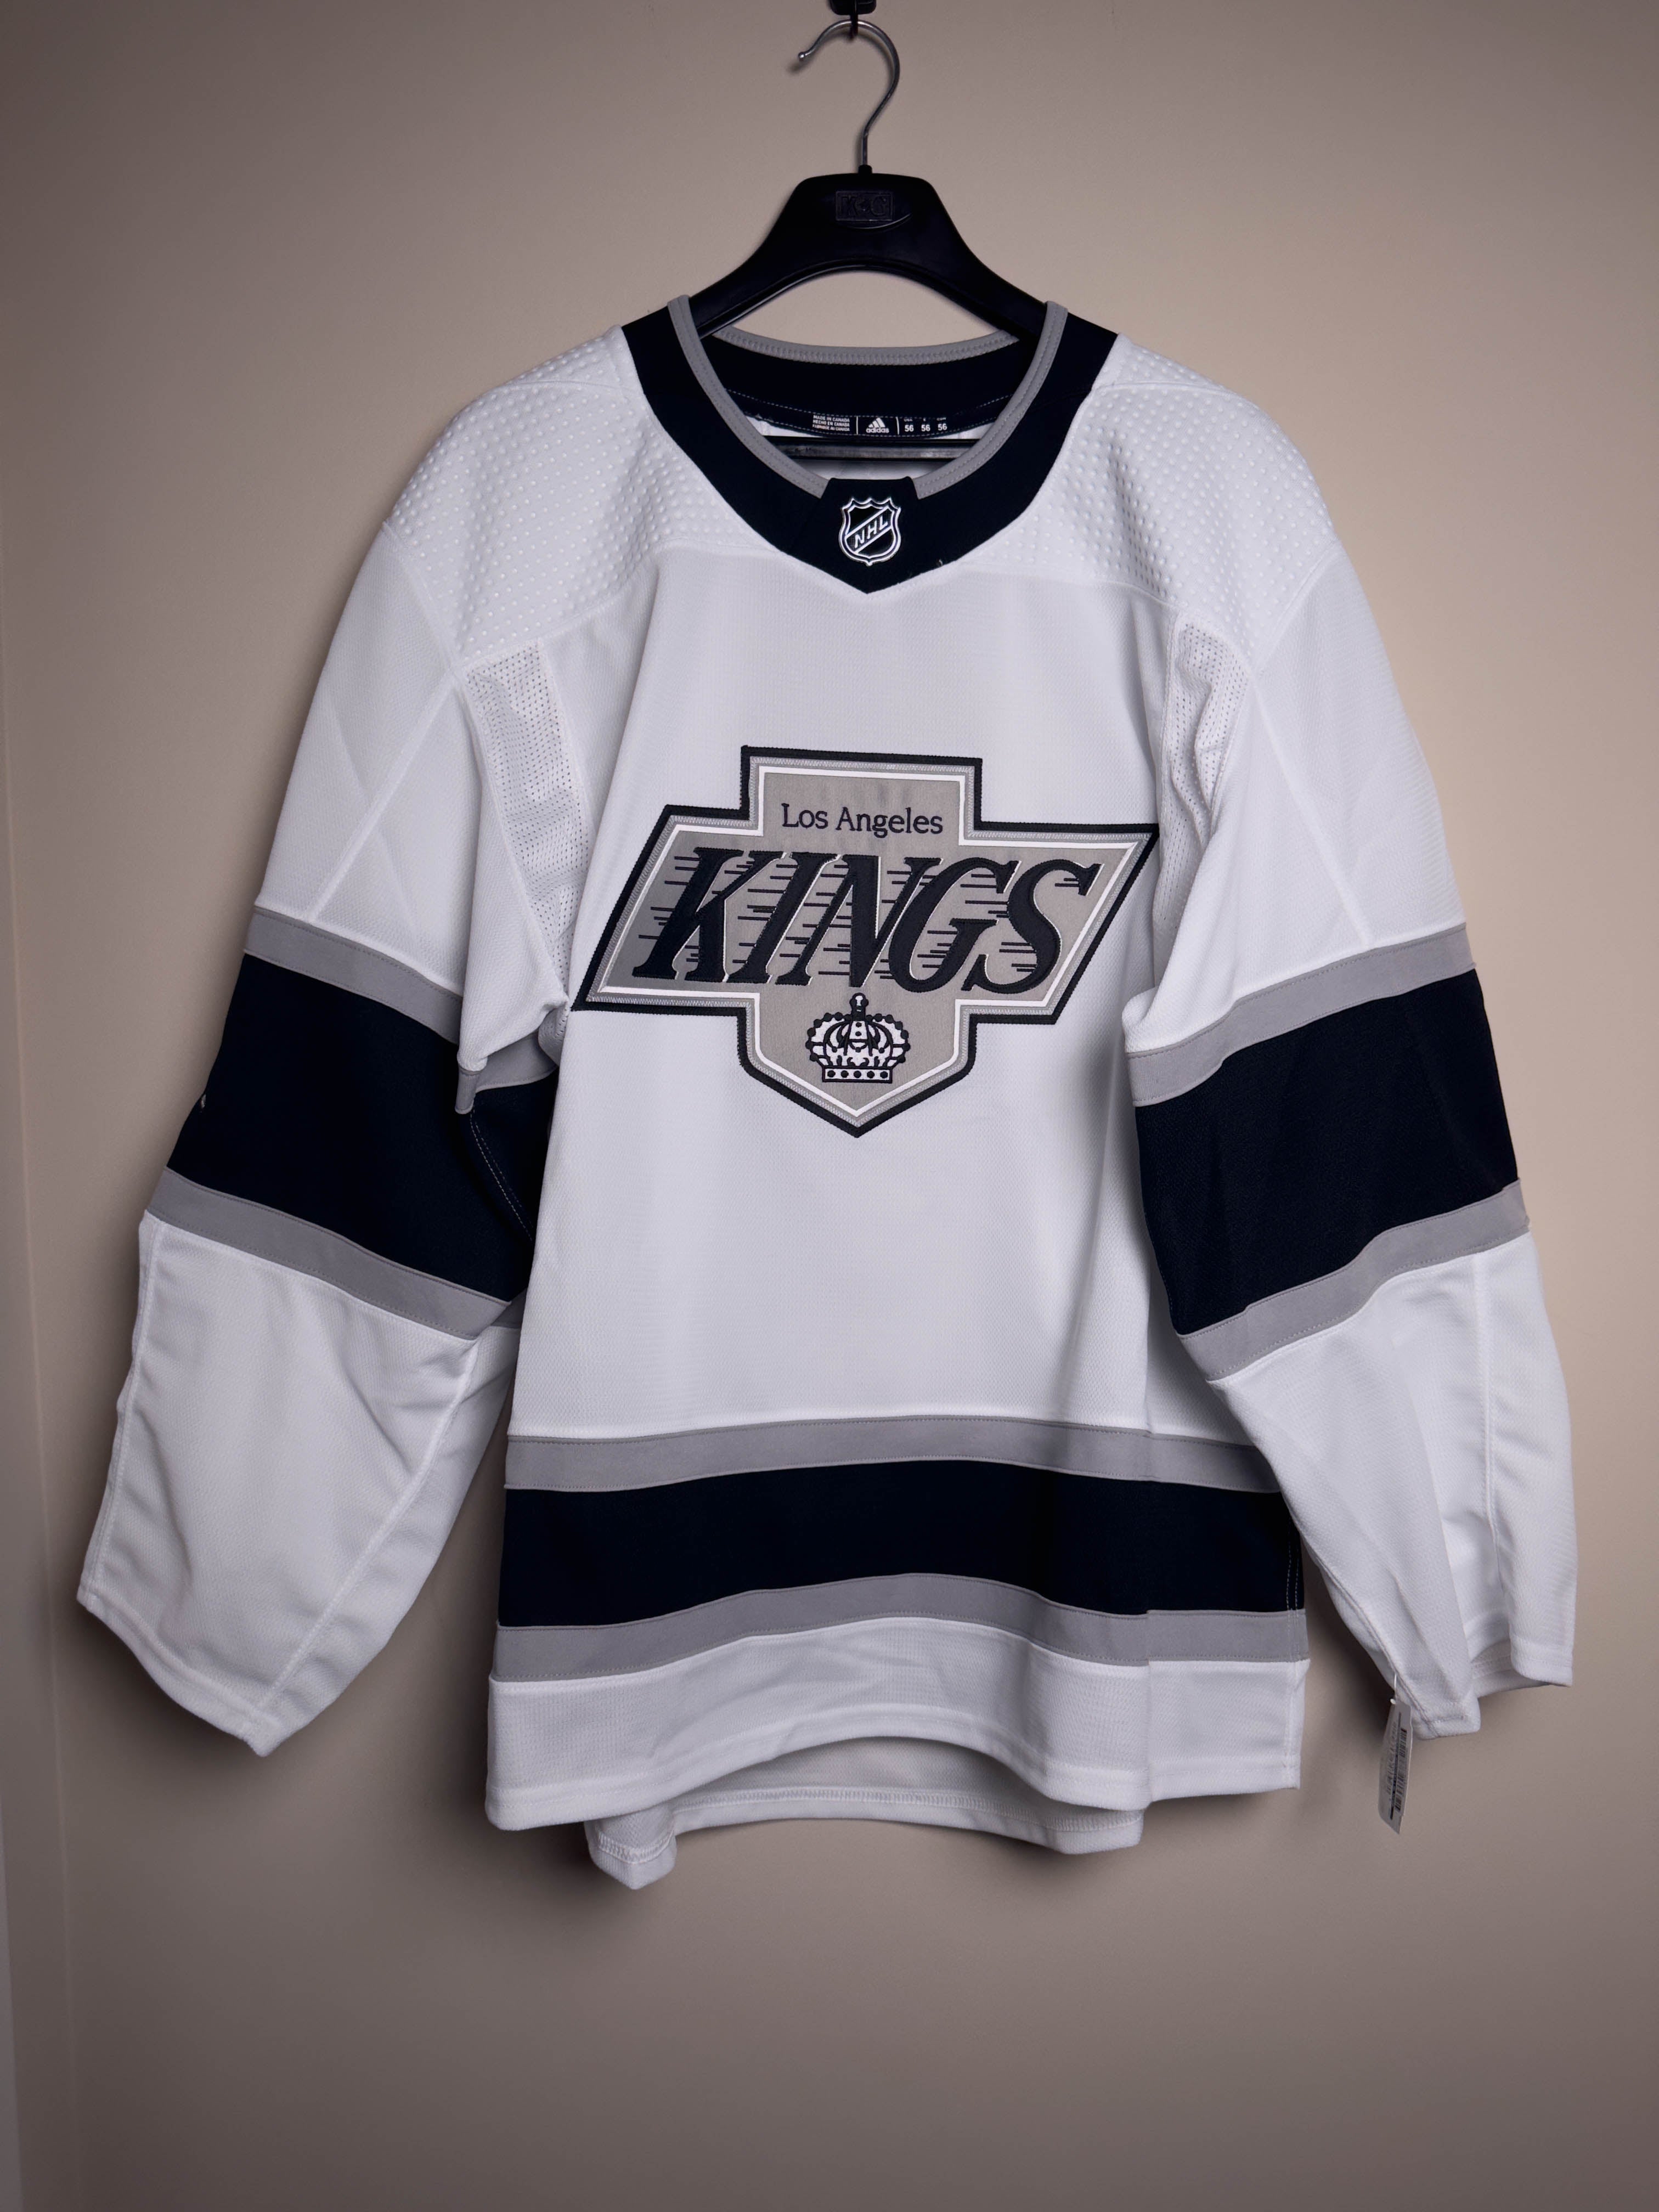 kings hockey jersey